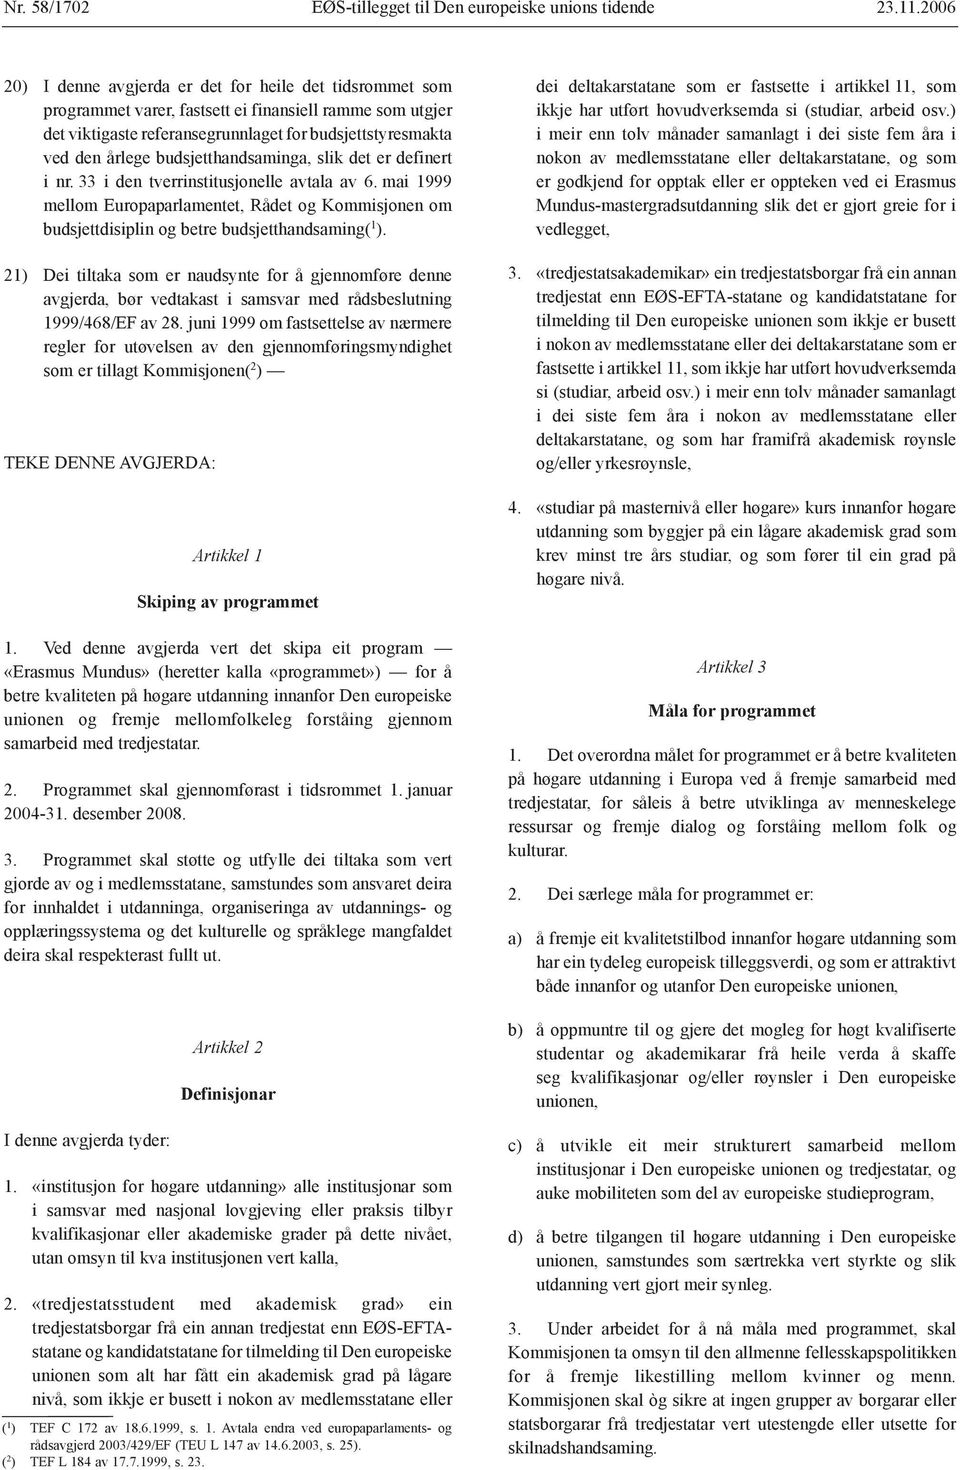 budsjetthandsaminga, slik det er definert i nr. 33 i den tverrinstitusjonelle avtala av 6. mai 1999 mellom Europaparlamentet, Rådet og Kommisjonen om budsjettdisiplin og betre budsjetthandsaming( 1 ).